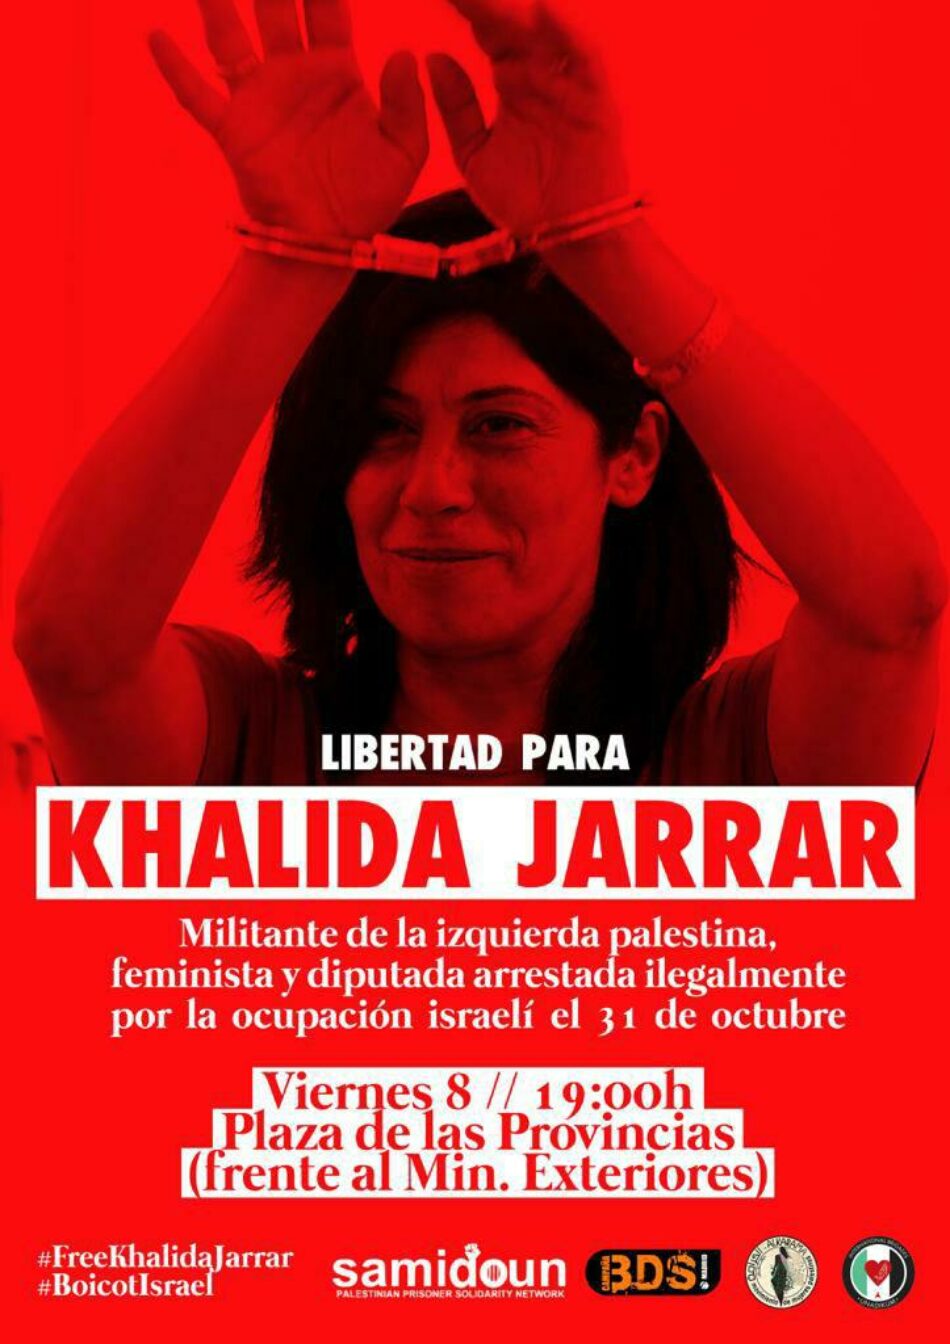 Organizaciones de solidaridad con Palestina convocan una concentración en Madrid contra el arresto de